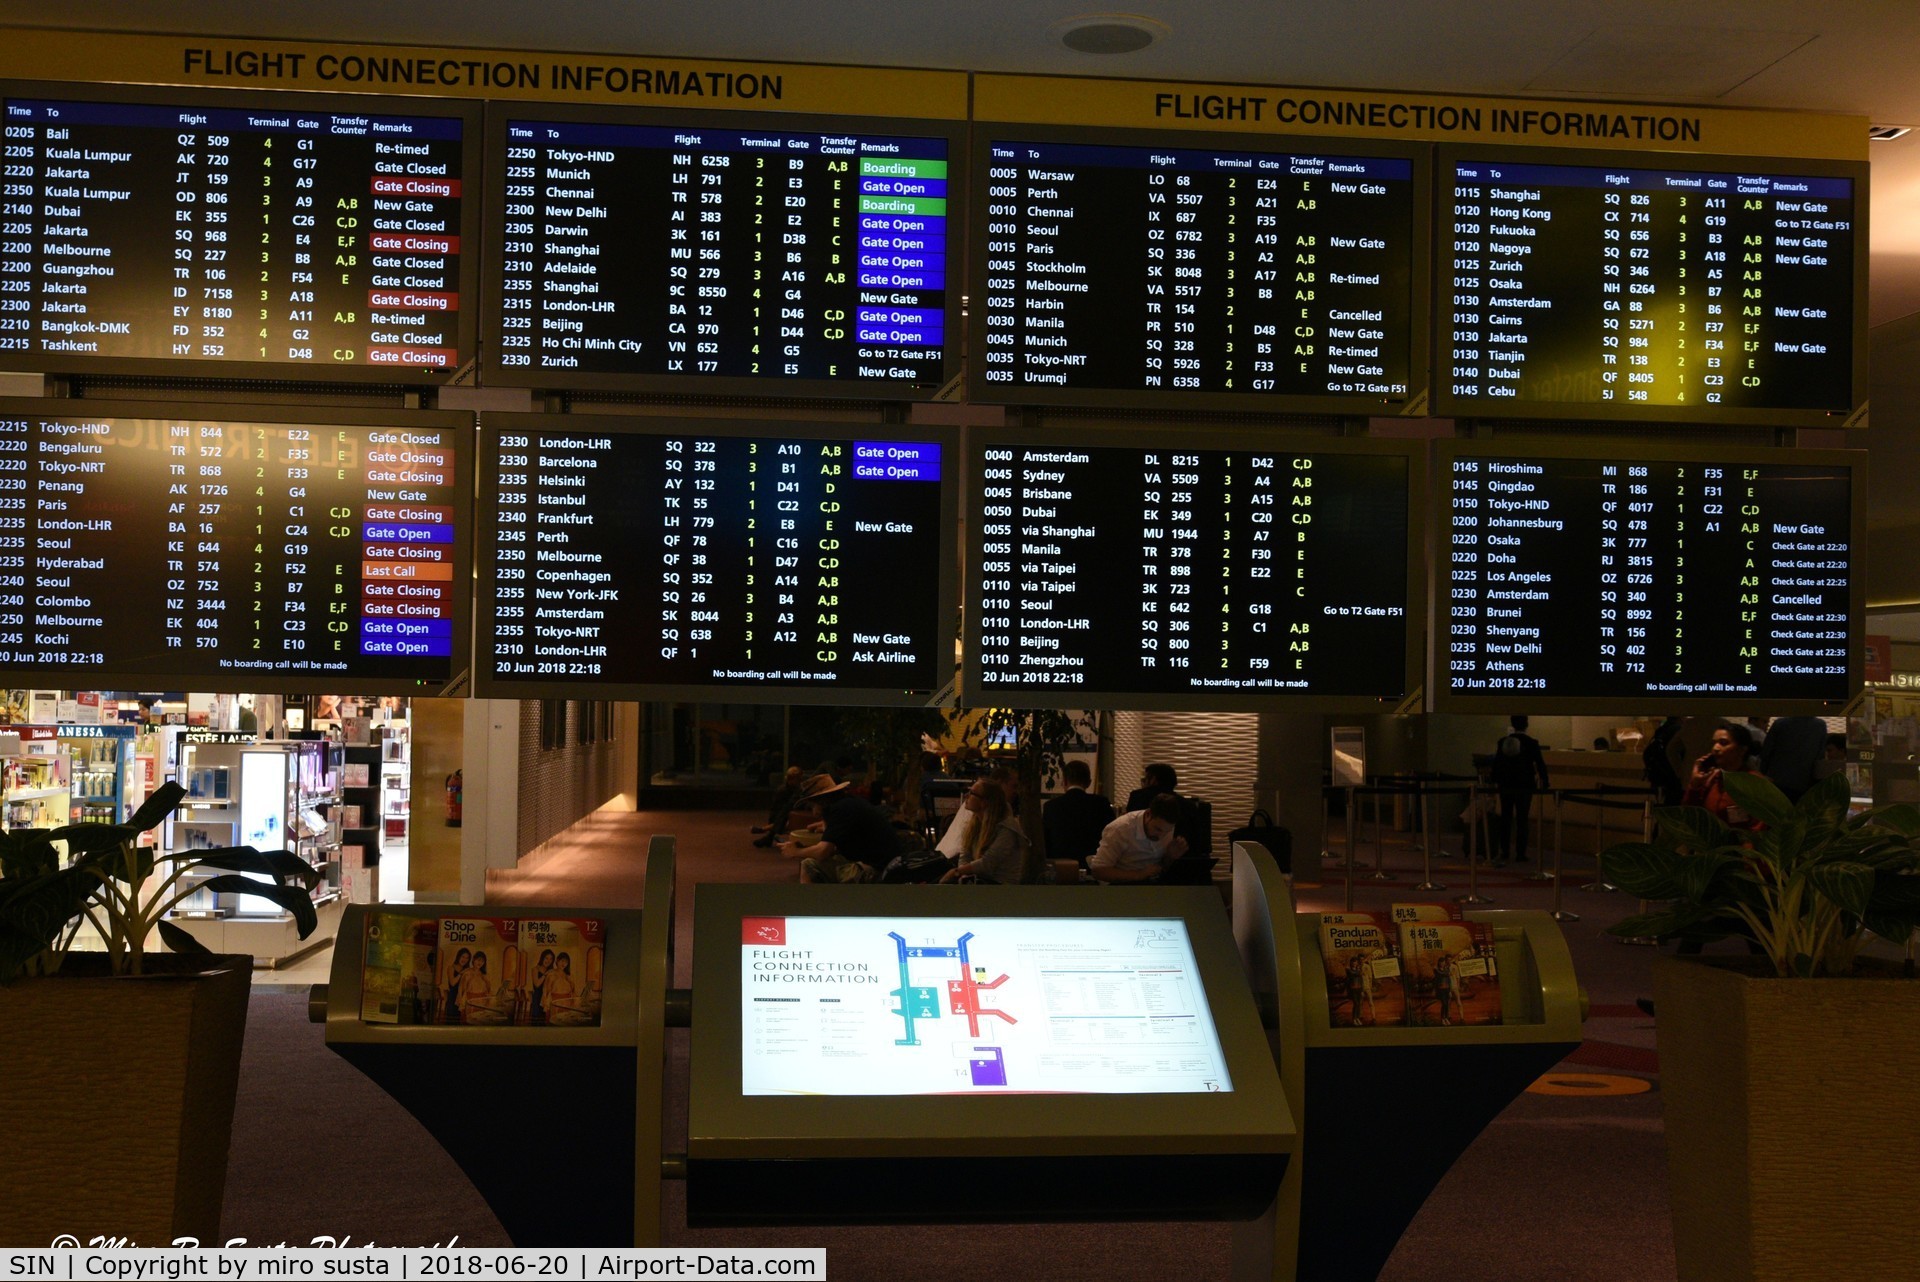 Singapore Changi Airport, Changi Singapore (SIN) - Singapore Changi International Airport transit area, Terminal 2